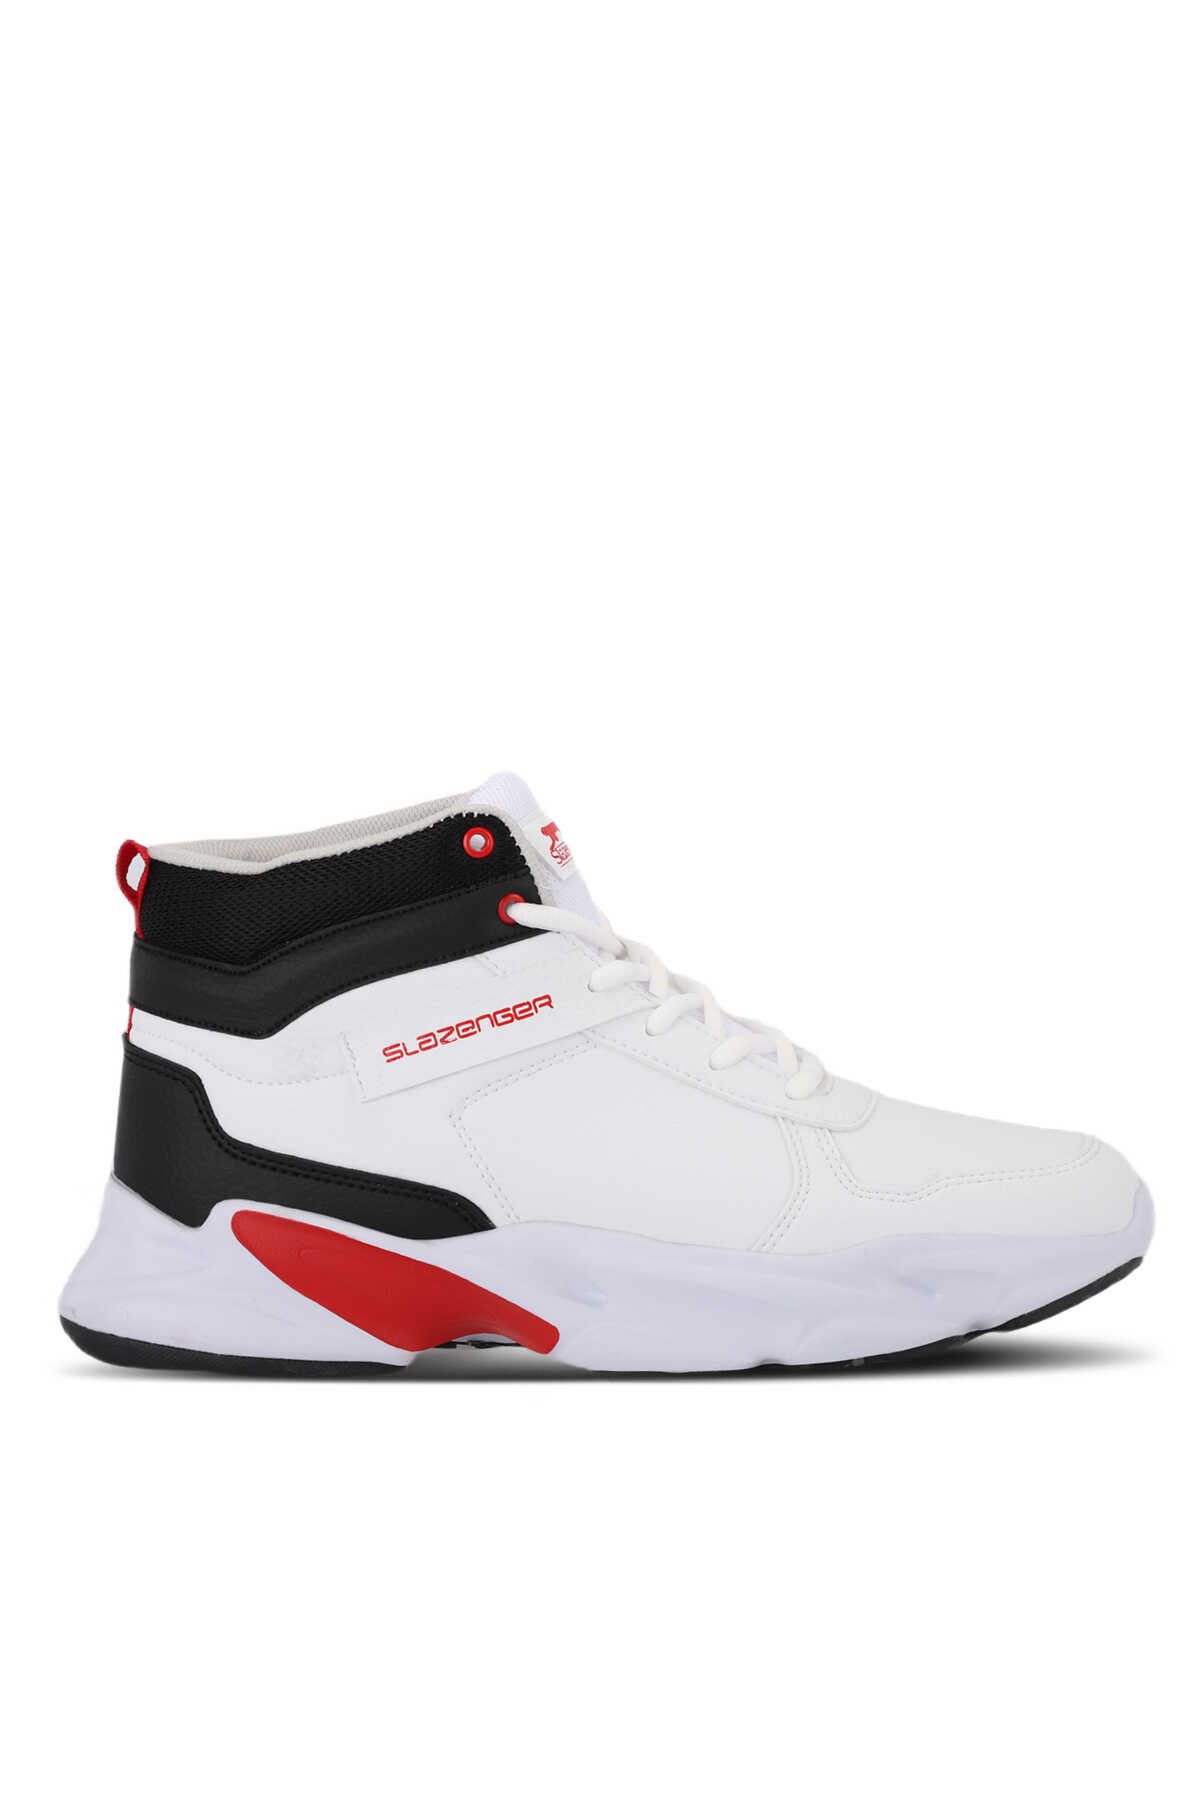 Slazenger - Slazenger PATTERN Sneaker Erkek Ayakkabı Beyaz / Kırmızı